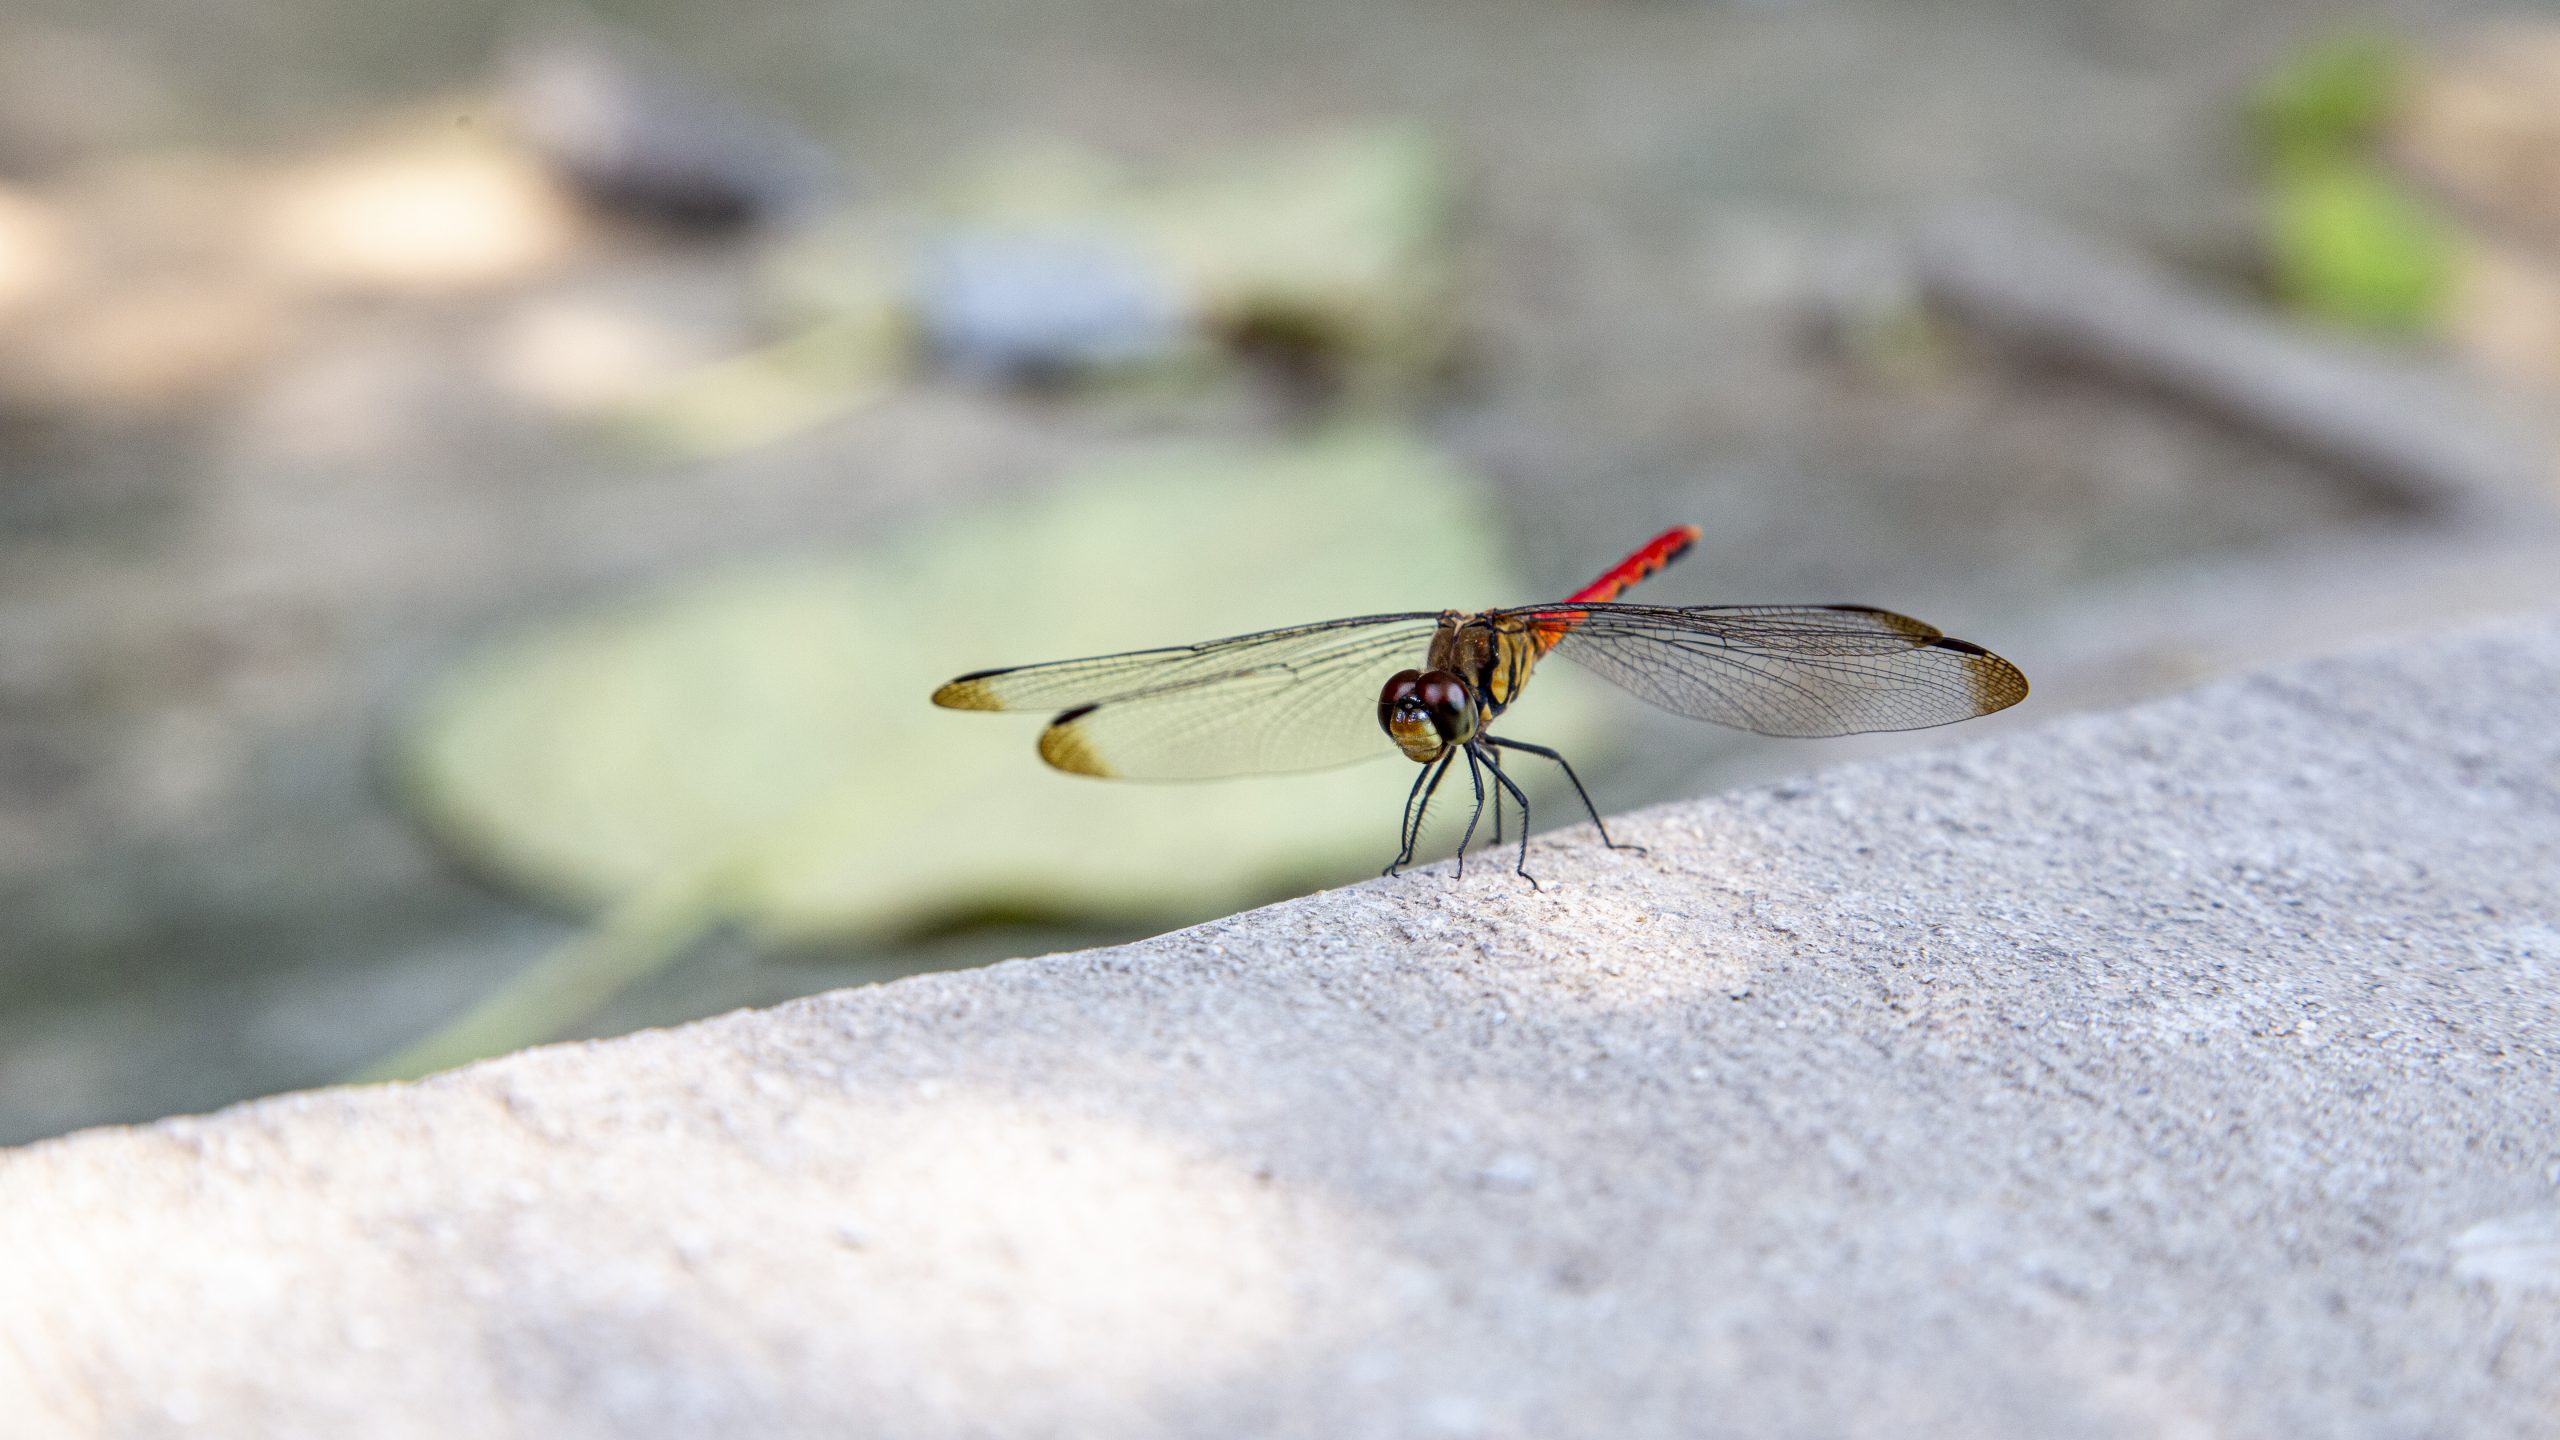 A dragonfly in China, macro photography. Photographer Tuomas Harjumaaskola.